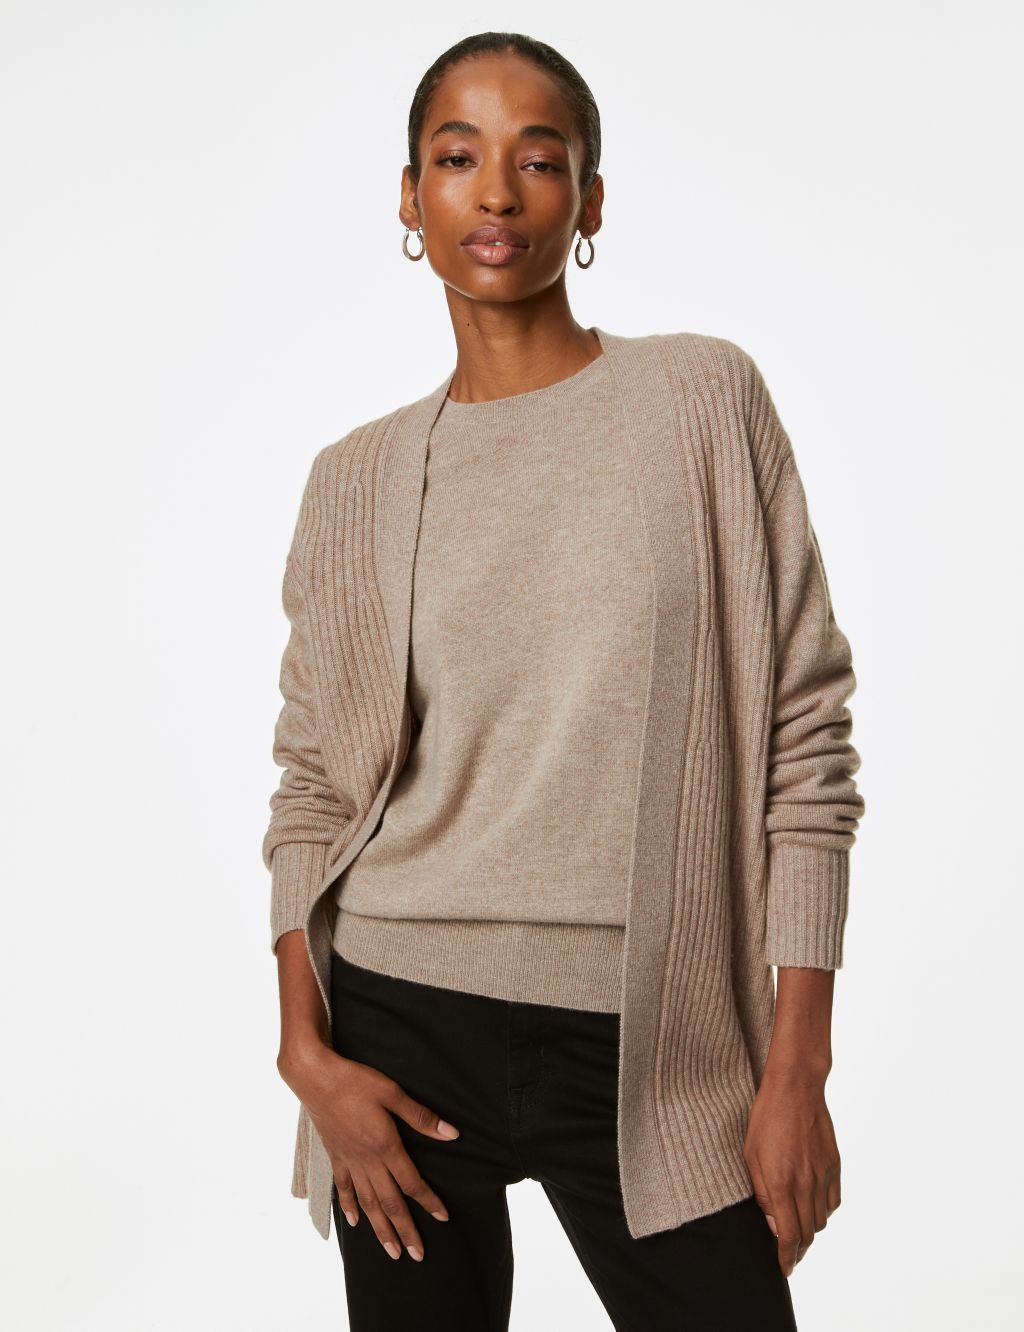 Women's Knitwear: Cashmere, Sweaters, Cardigans